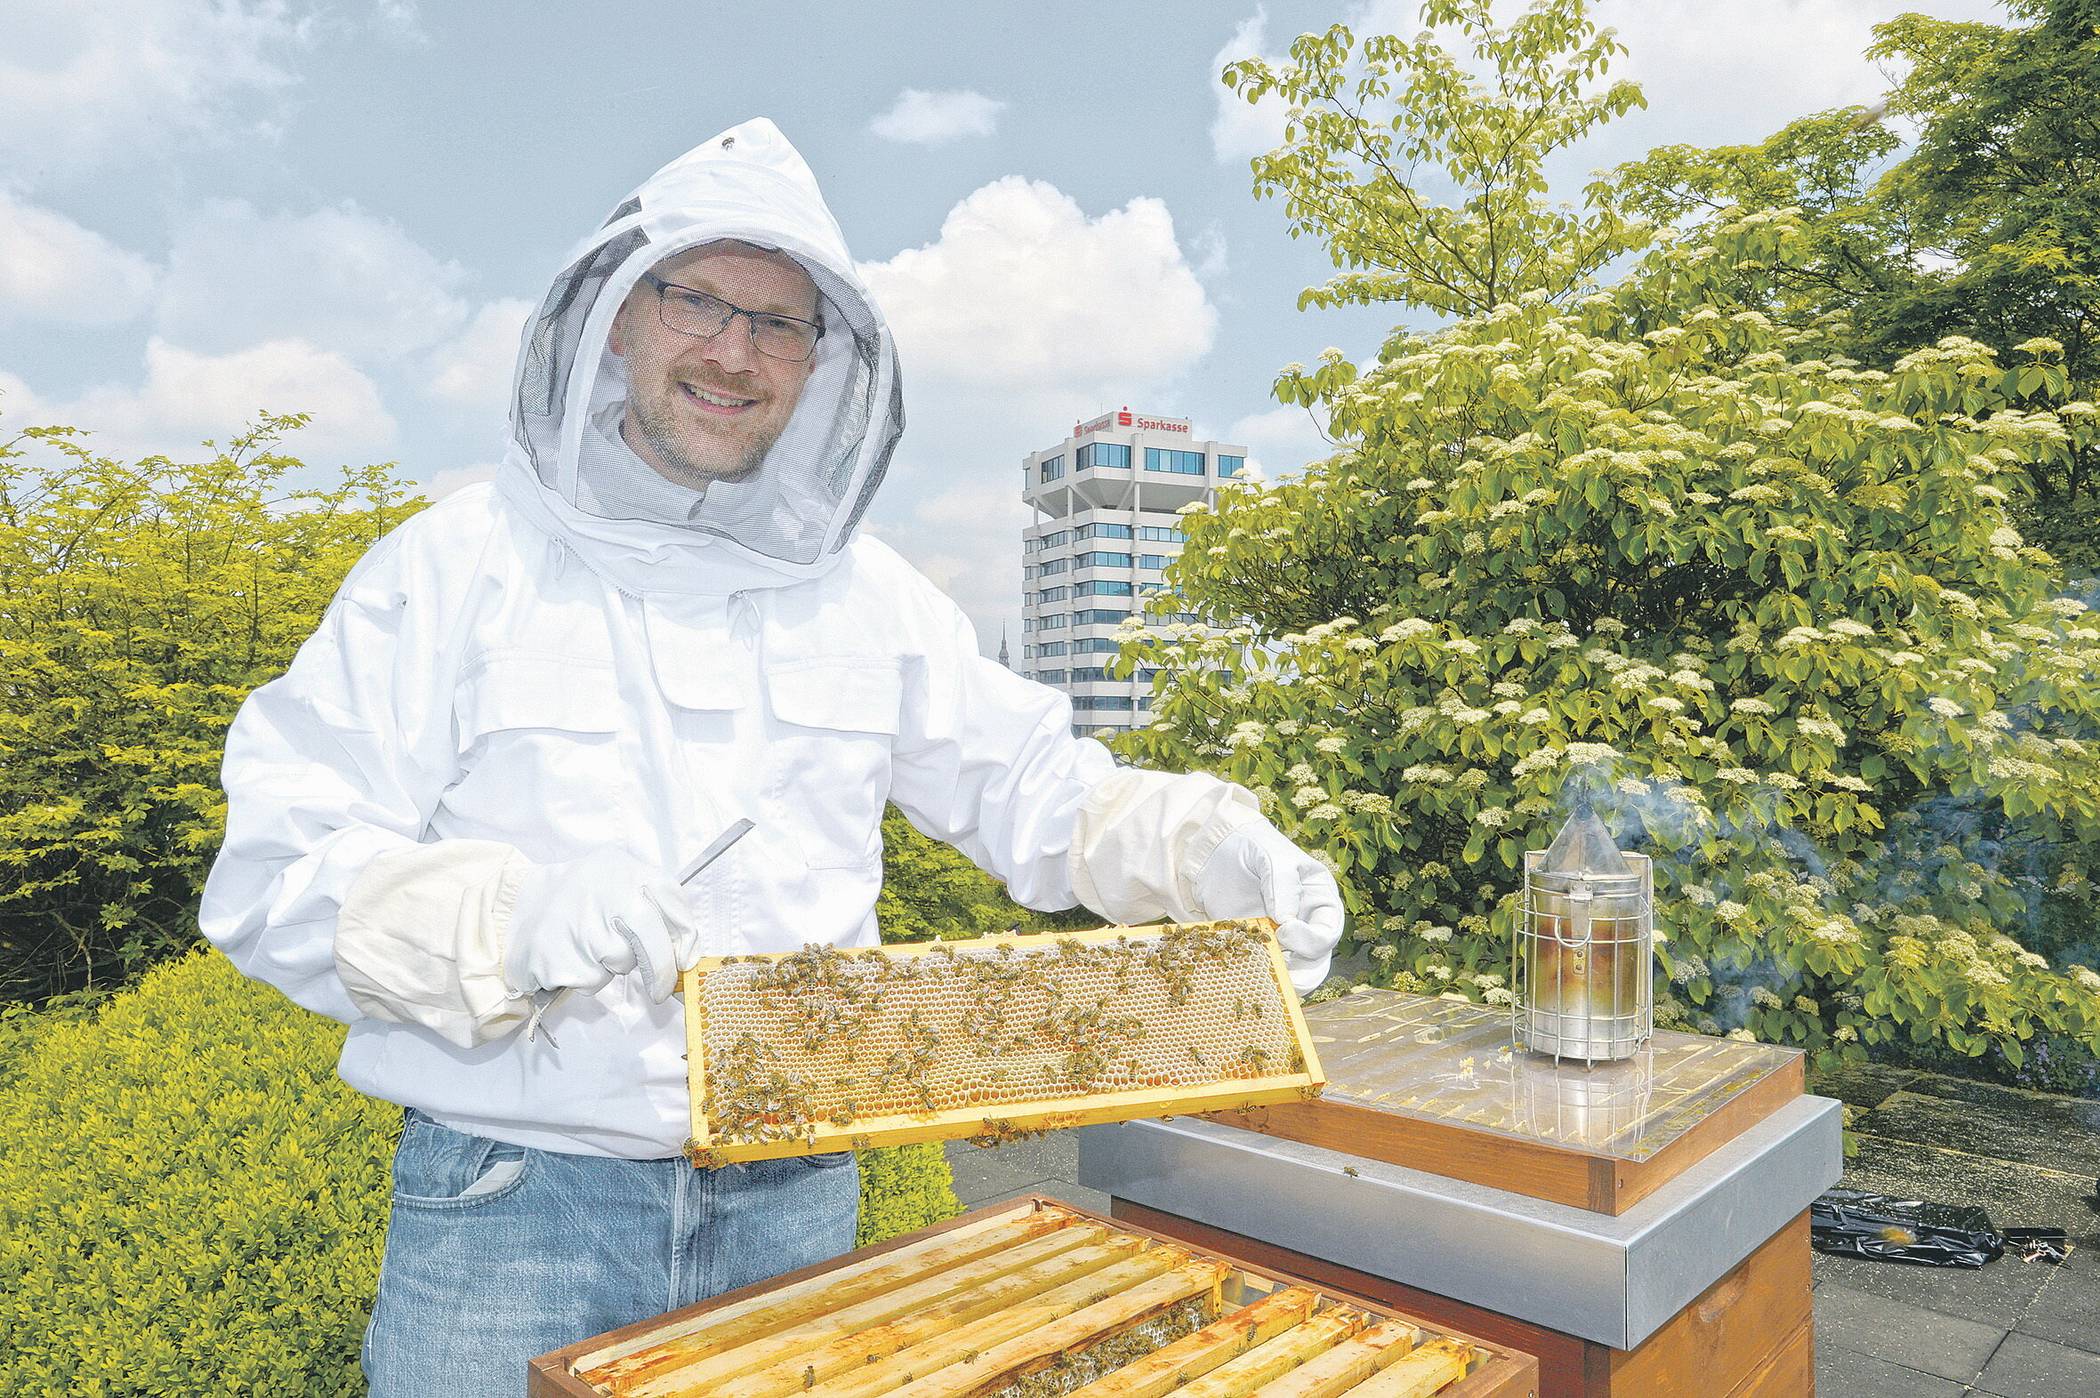  Um dem Bienensterben entgegenzuwirken, hat die Sparkasse Wuppertal auf dem Dach des Neubaus in Elberfeld Bienen angesiedelt. 